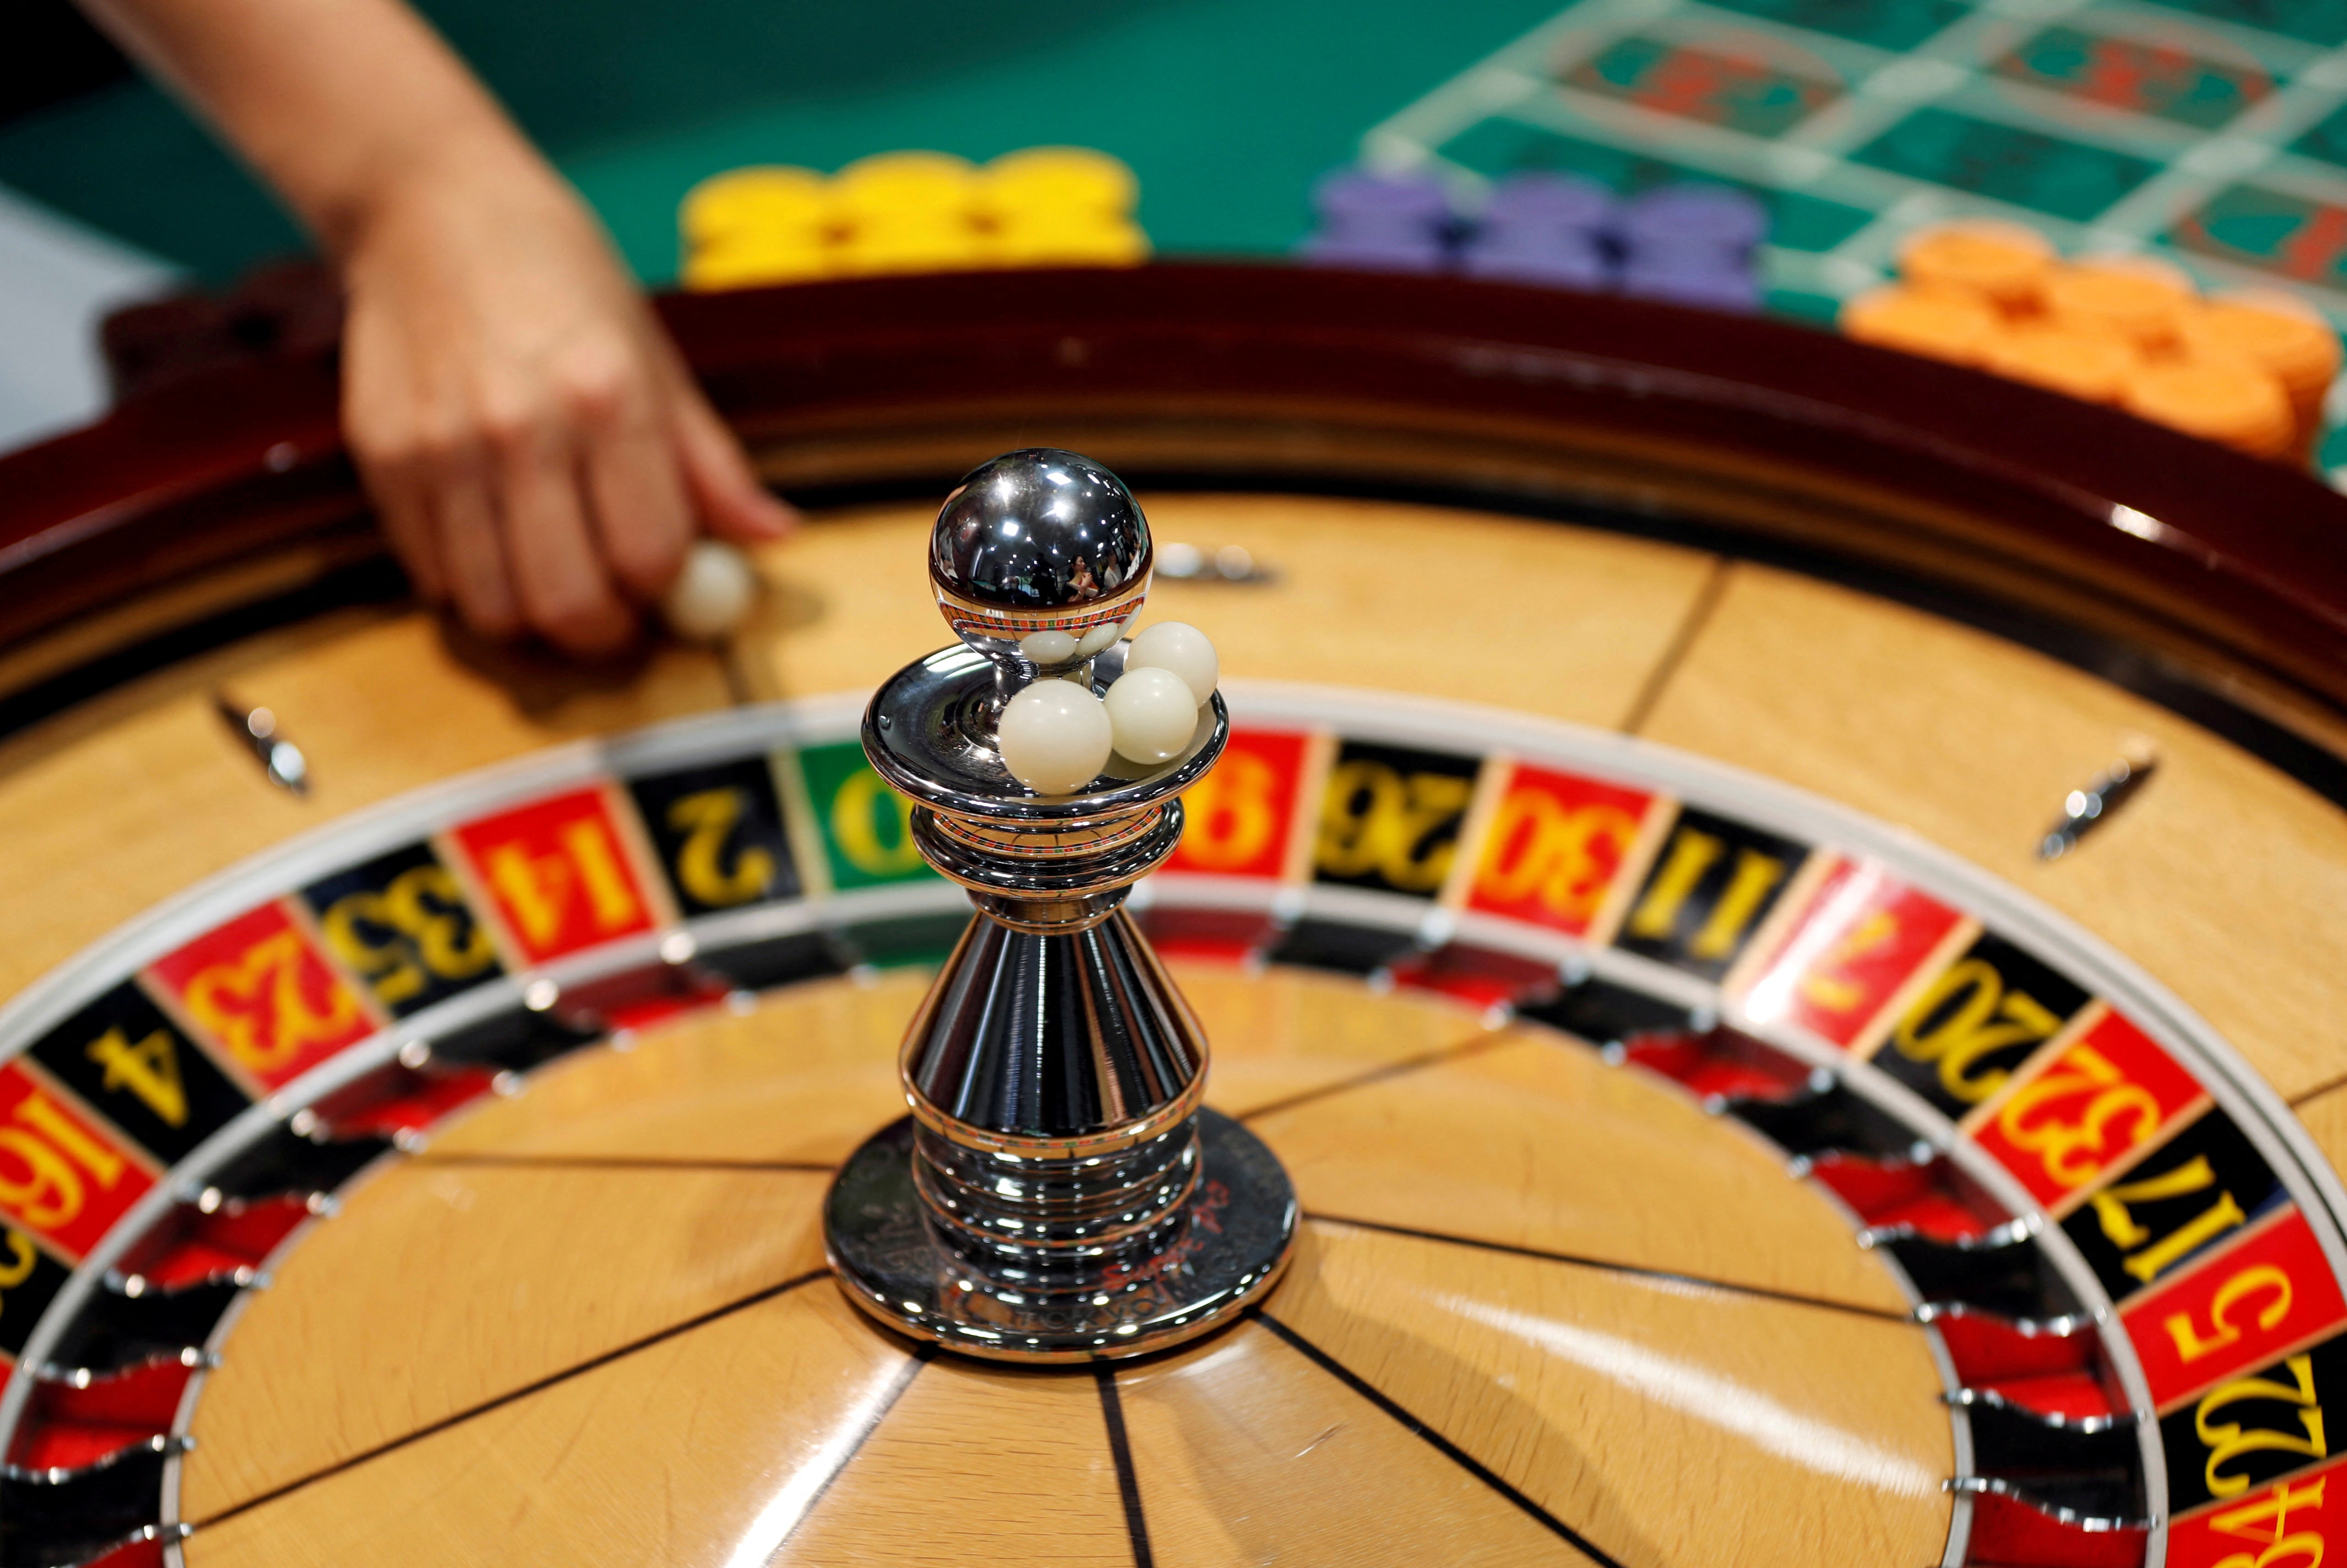 Kostenlose Casino-Slots – eine schwer fassbare Option, nach der sich die Suche lohnt